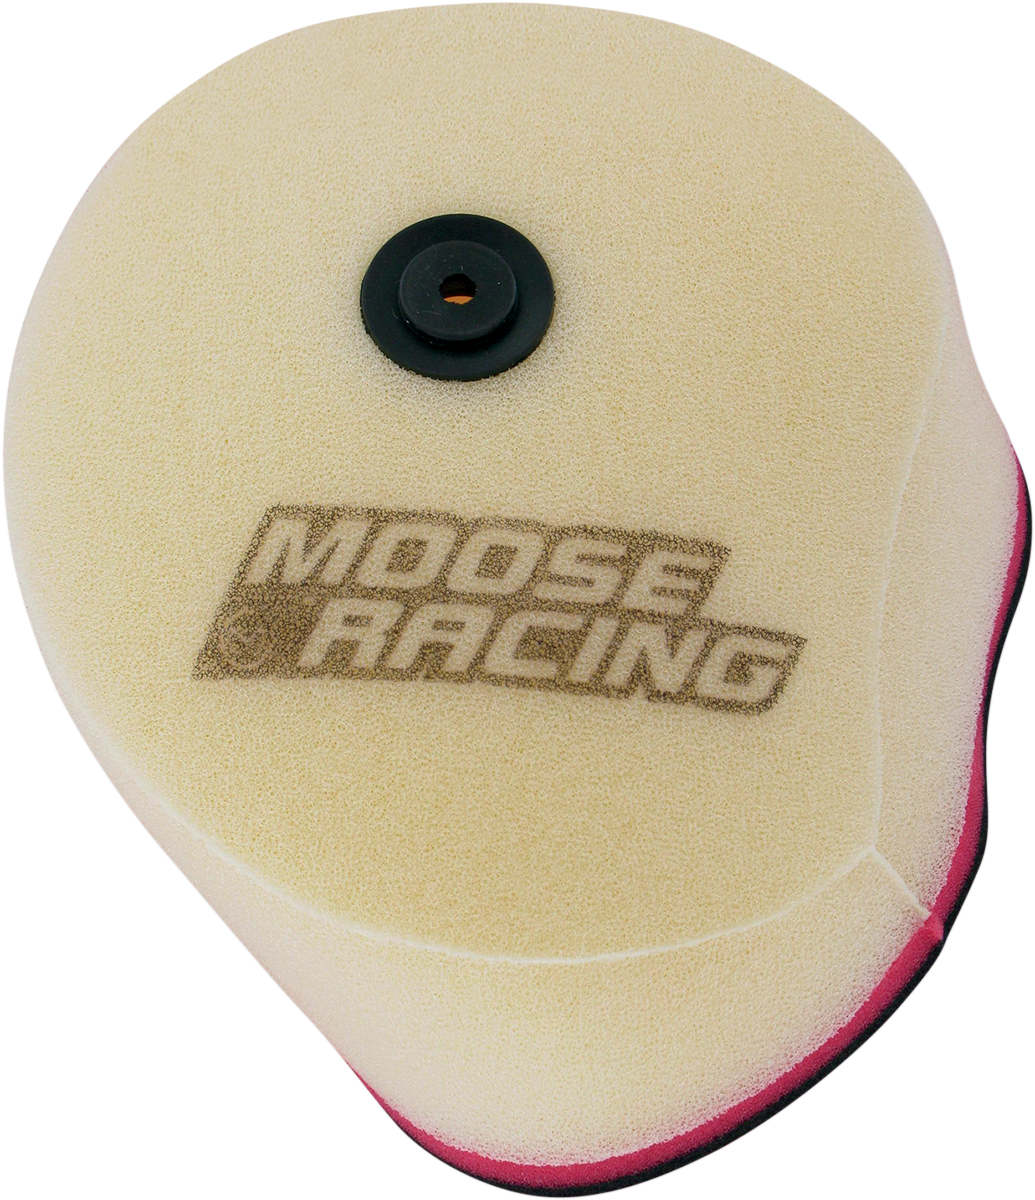 Filtro de aire MOOSE RACING - KX250F/RMZ250 1-40-45